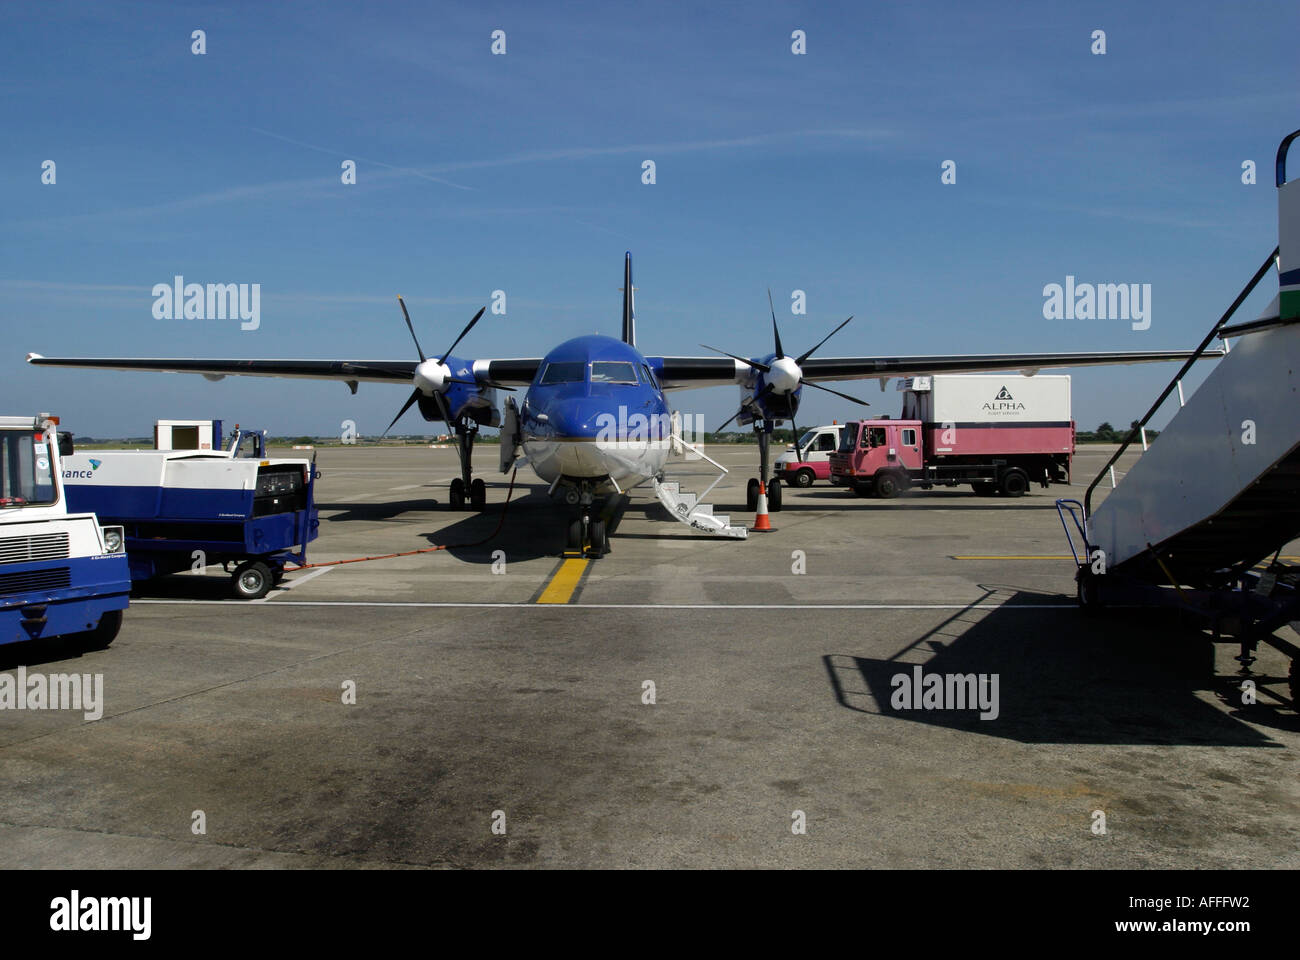 Avion à hélice KLM sur le stand avec Alpha catering véhicule et autres véhicules présents Banque D'Images